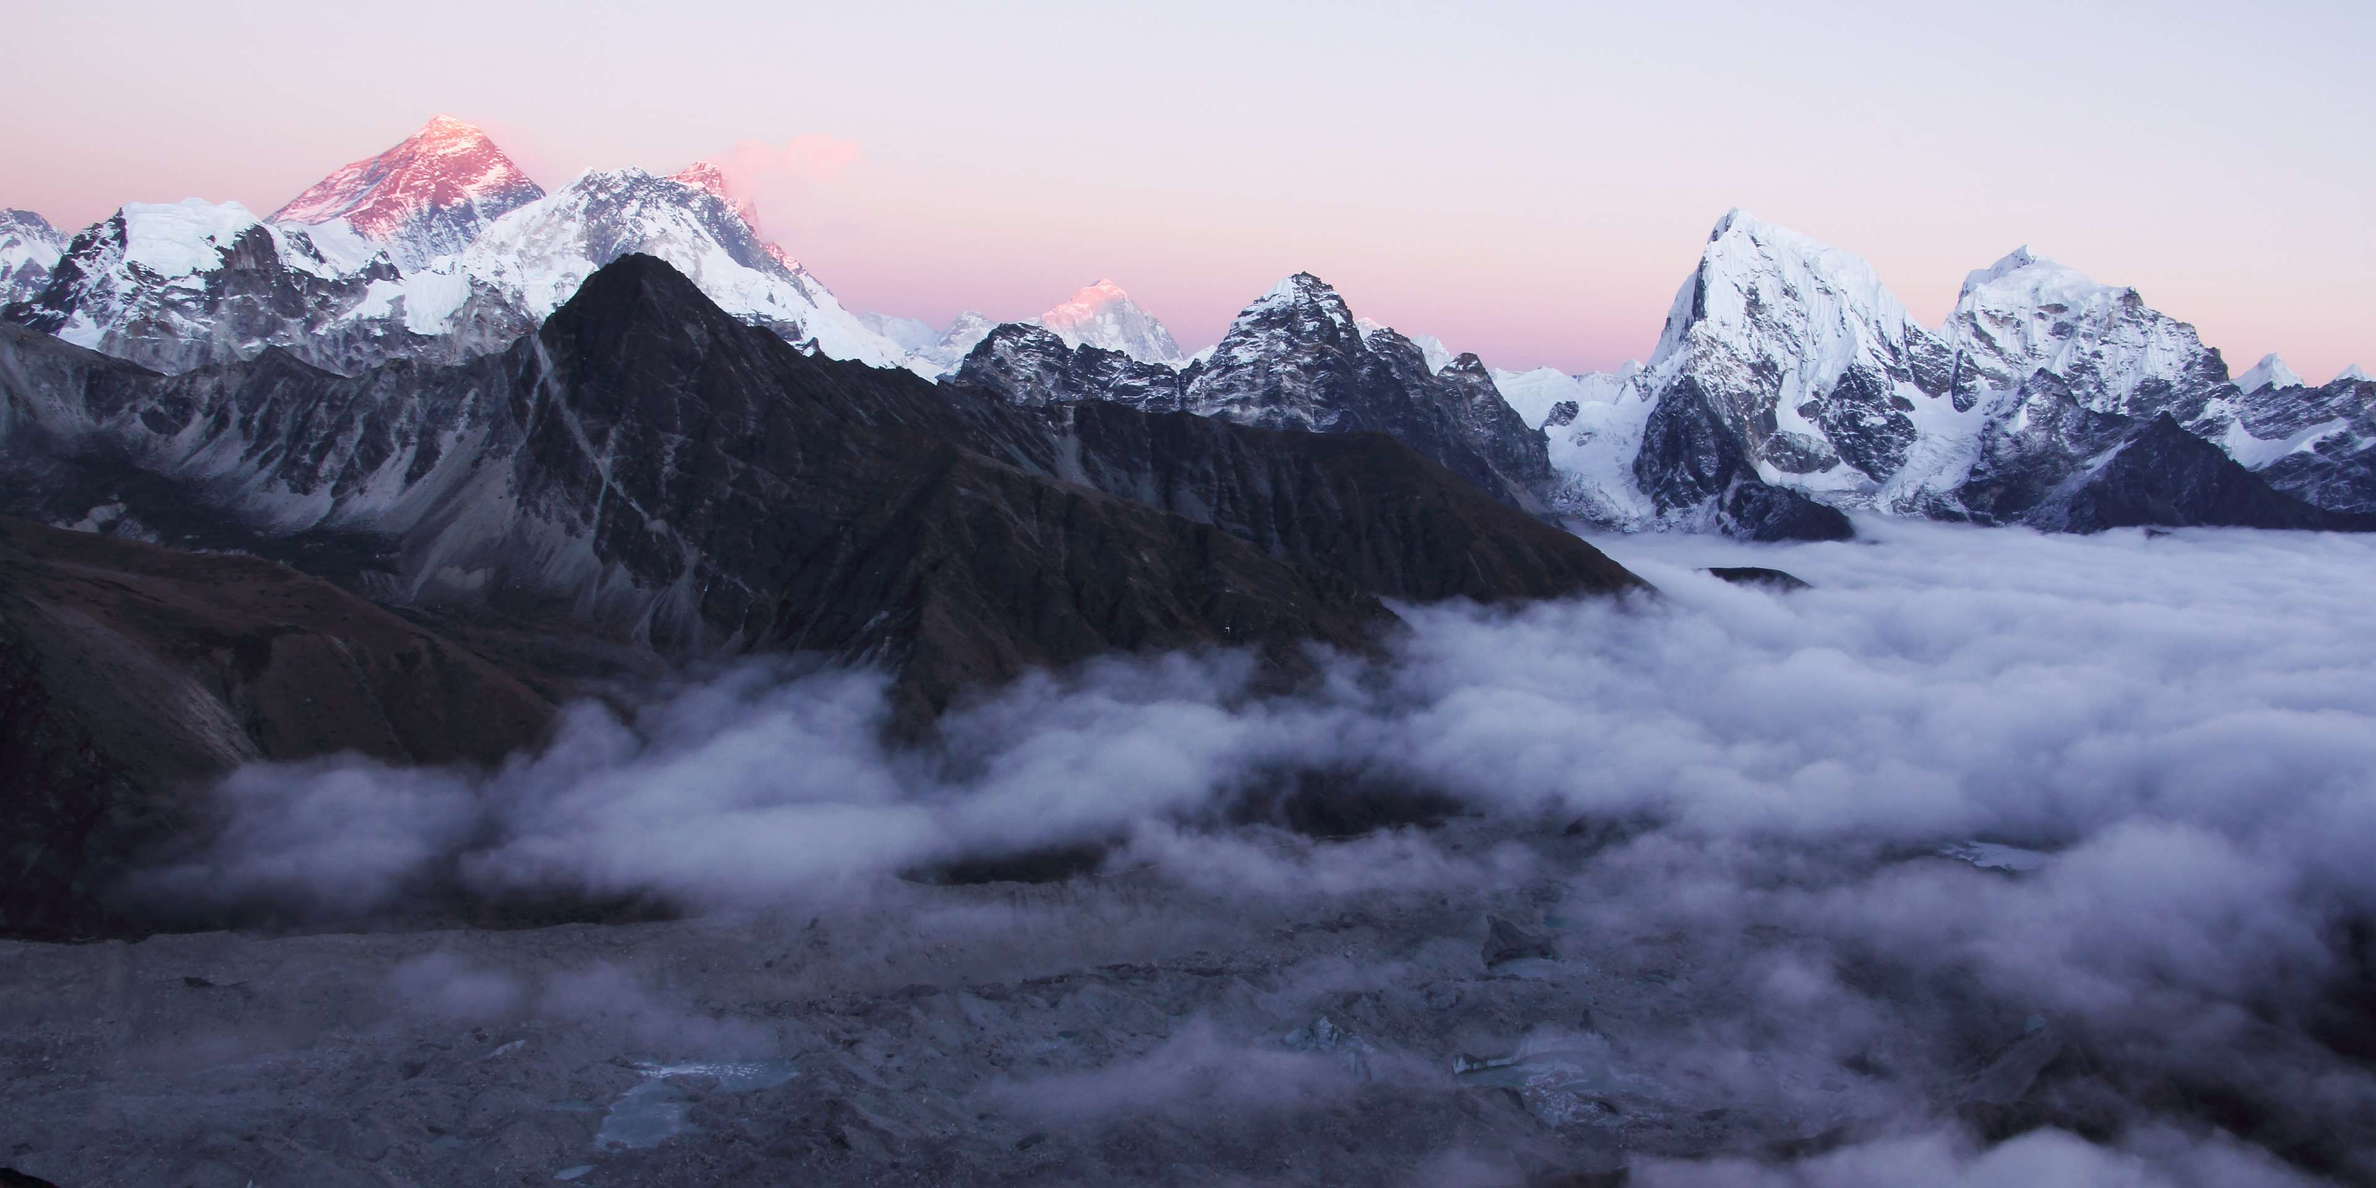 Gokyo  |  Ngozumba Glacier and Mt. Everest at sunset